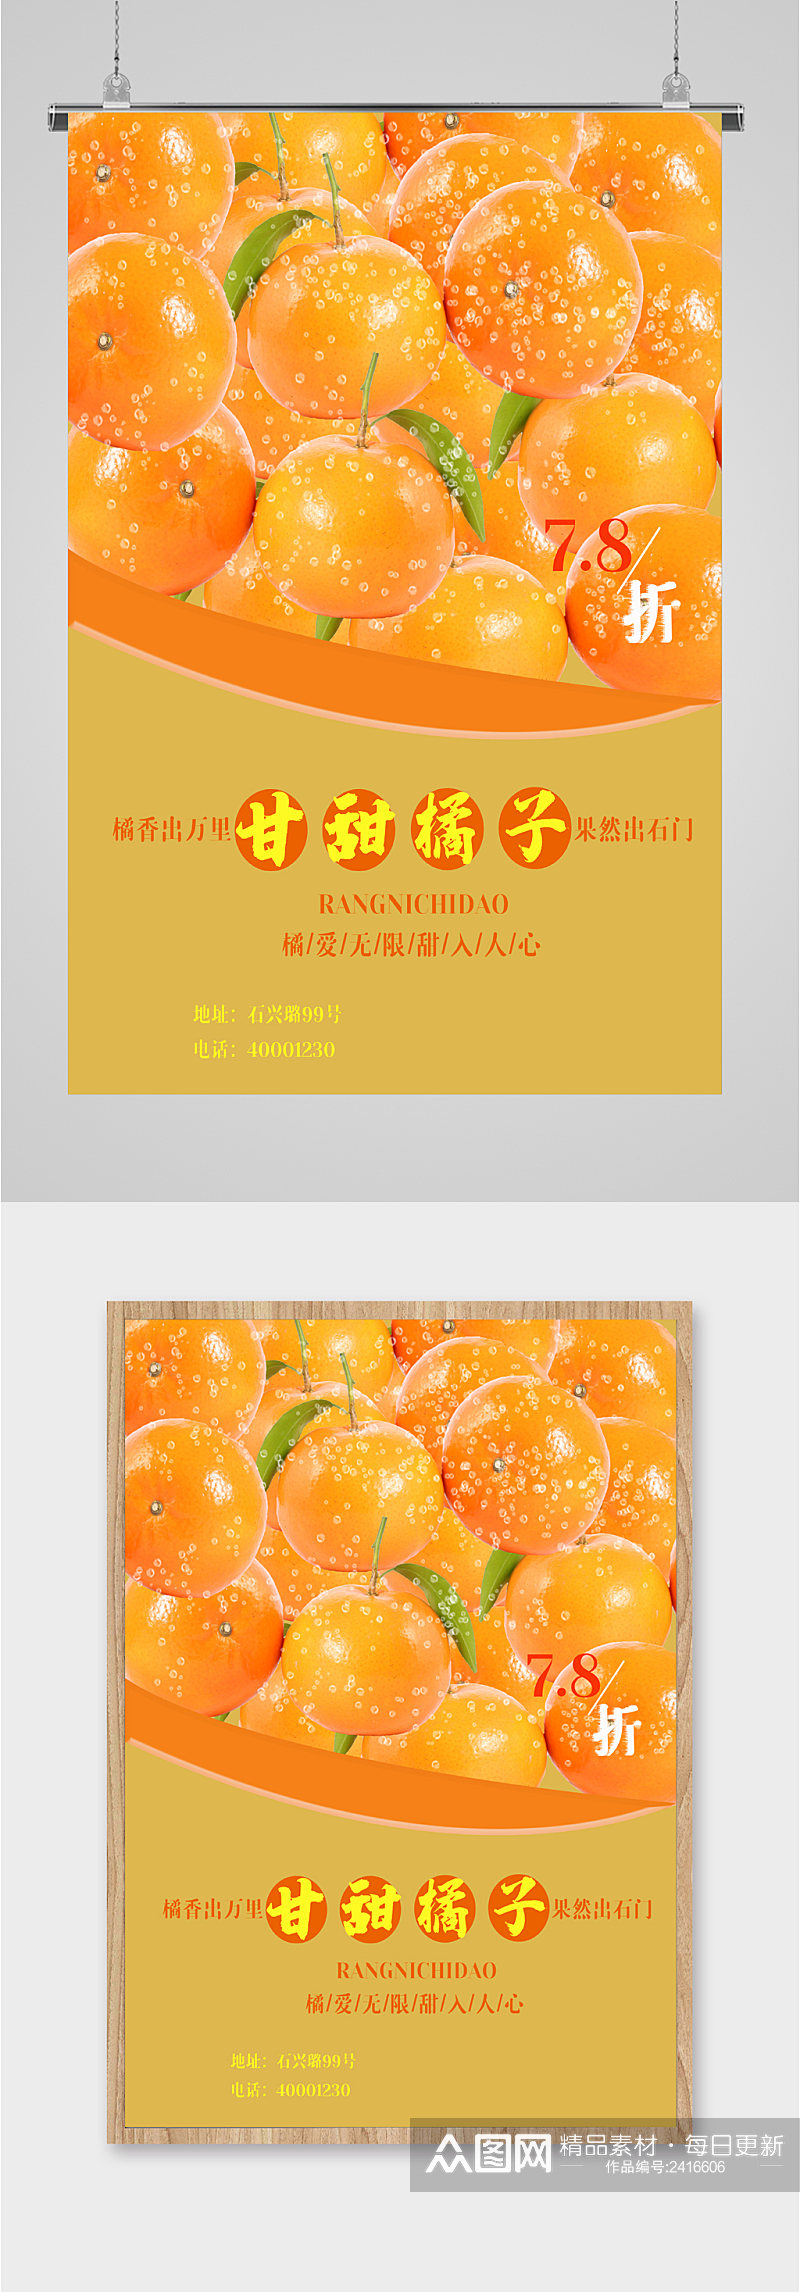 鲜甜橙子水果海报素材